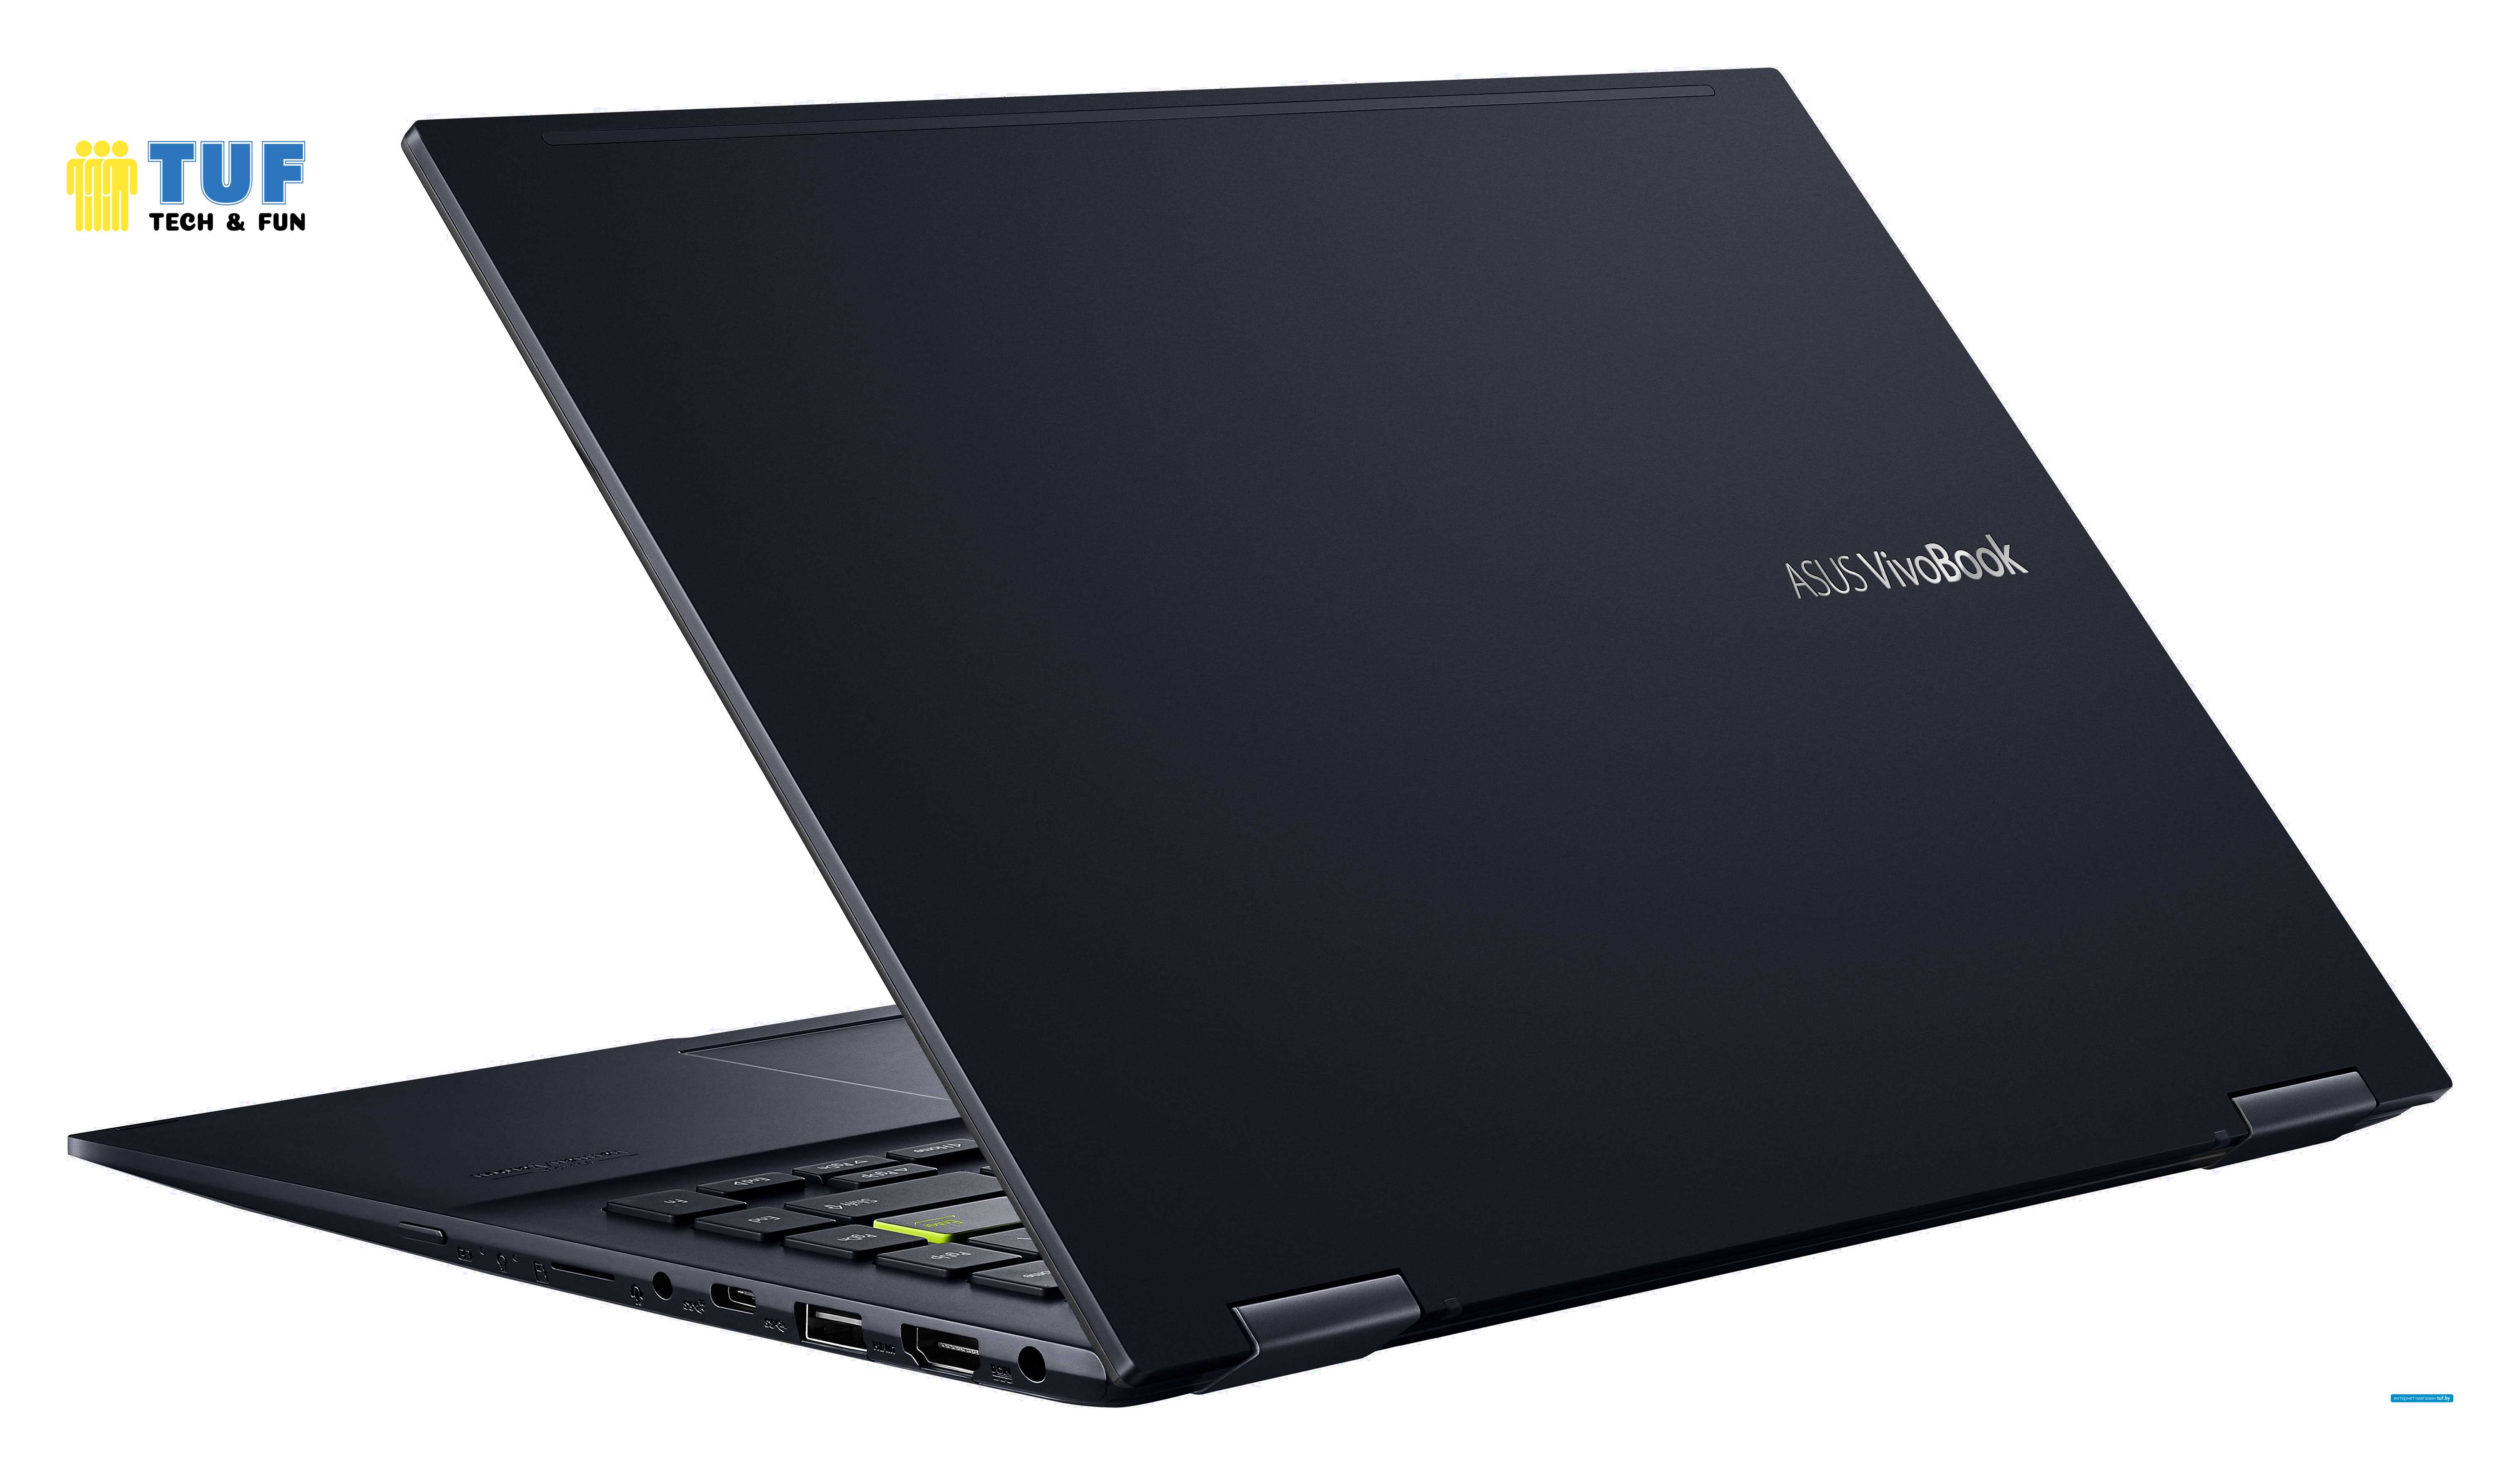 Ноутбук 2-в-1 ASUS VivoBook Flip 14 TM420IA-EC084T